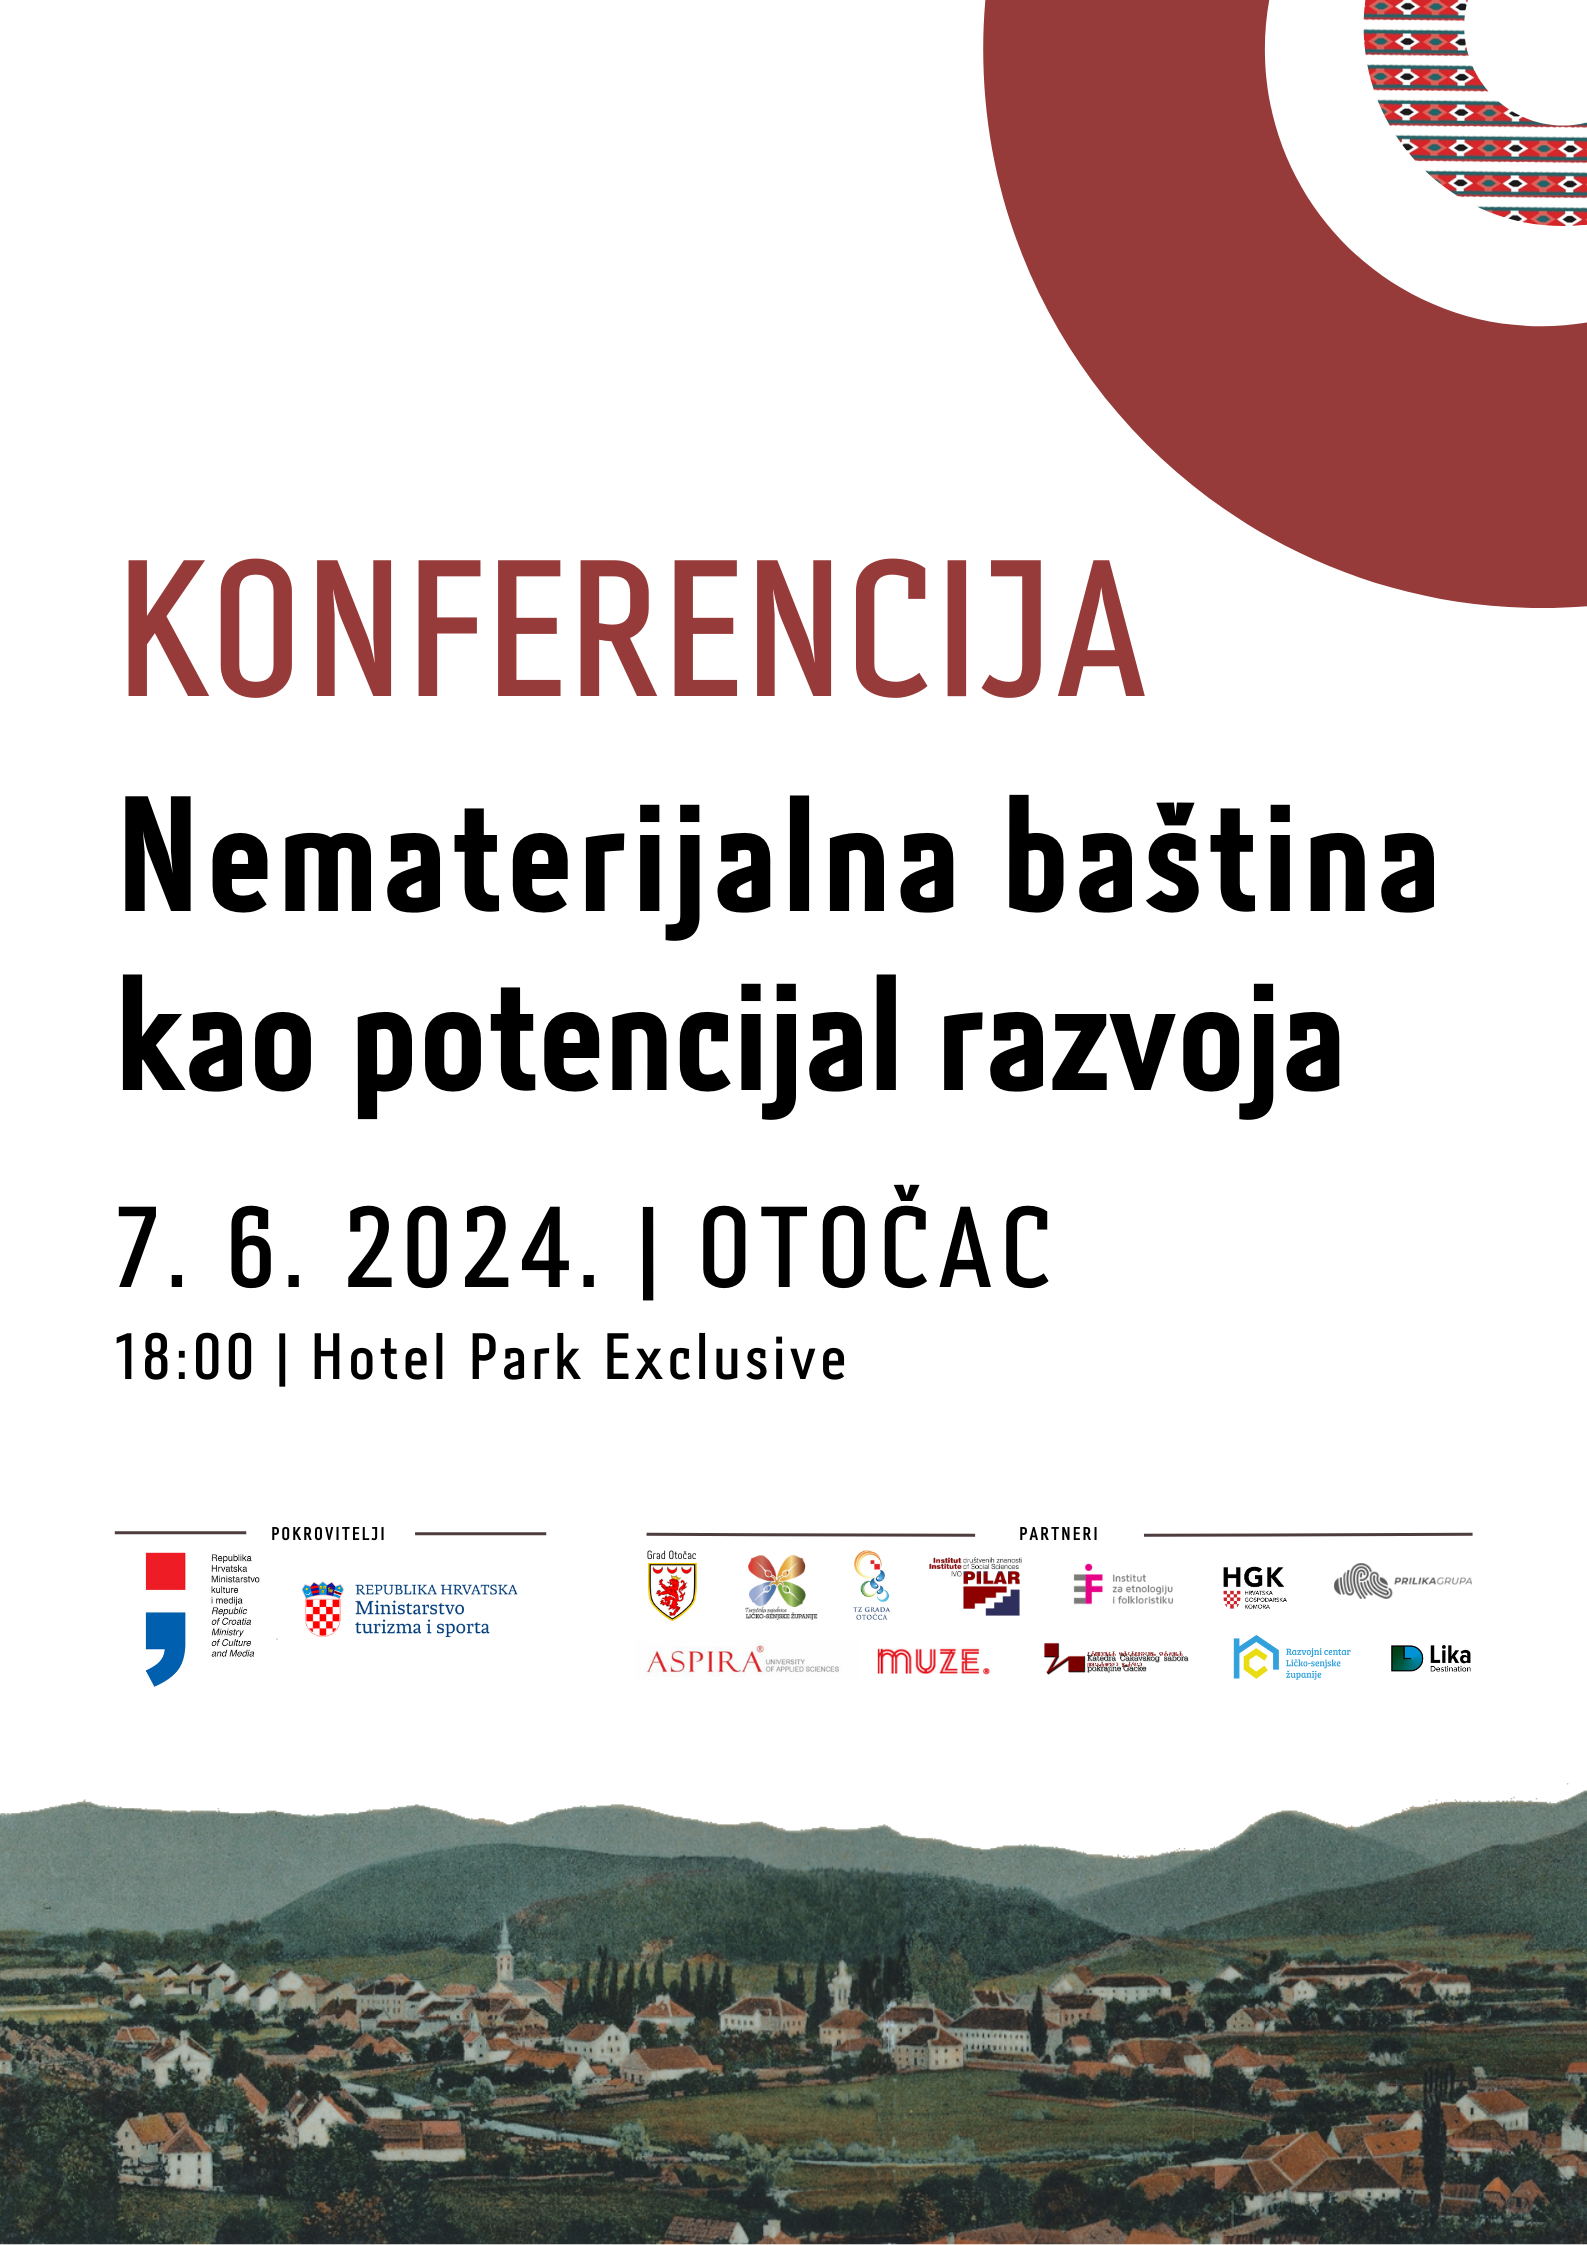 Konferencija “Nematerijalna baština kao potencijal razvoja”